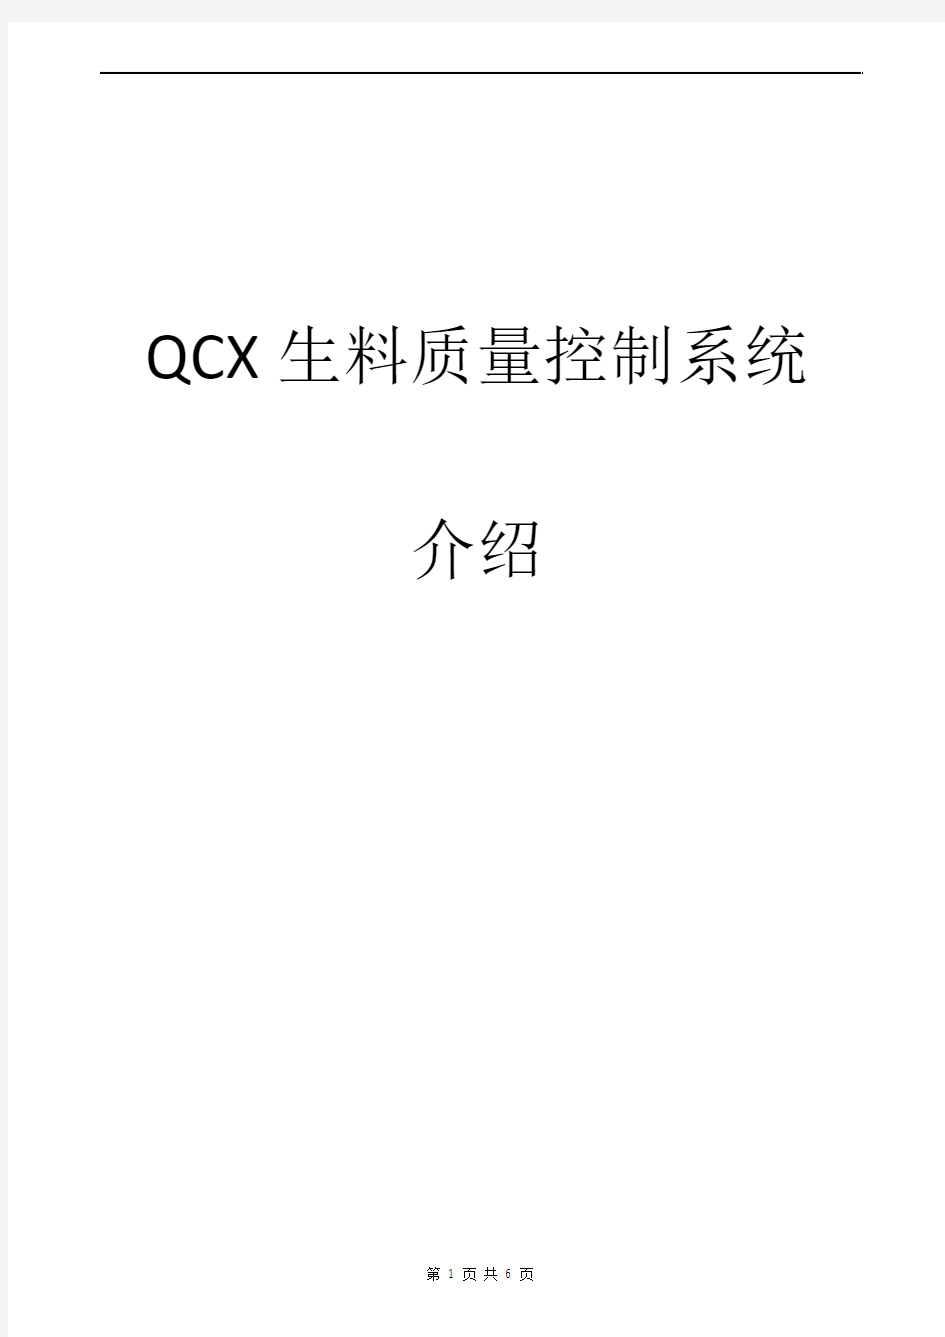 QCX生料质量控制系统介绍